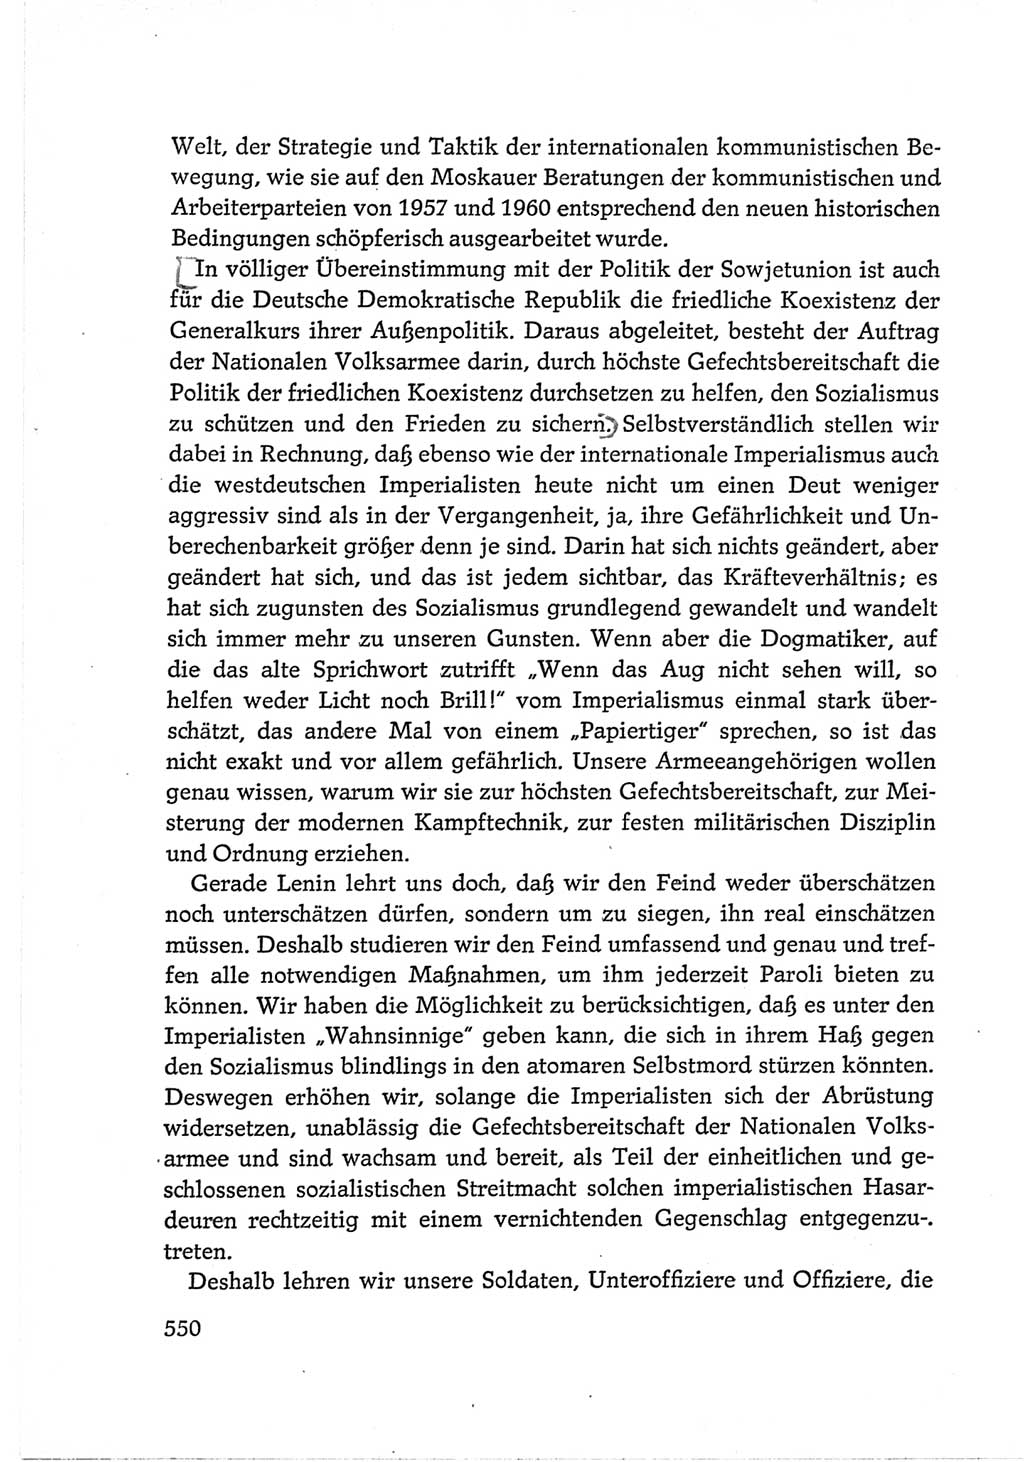 Protokoll der Verhandlungen des Ⅵ. Parteitages der Sozialistischen Einheitspartei Deutschlands (SED) [Deutsche Demokratische Republik (DDR)] 1963, Band Ⅲ, Seite 550 (Prot. Verh. Ⅵ. PT SED DDR 1963, Bd. Ⅲ, S. 550)